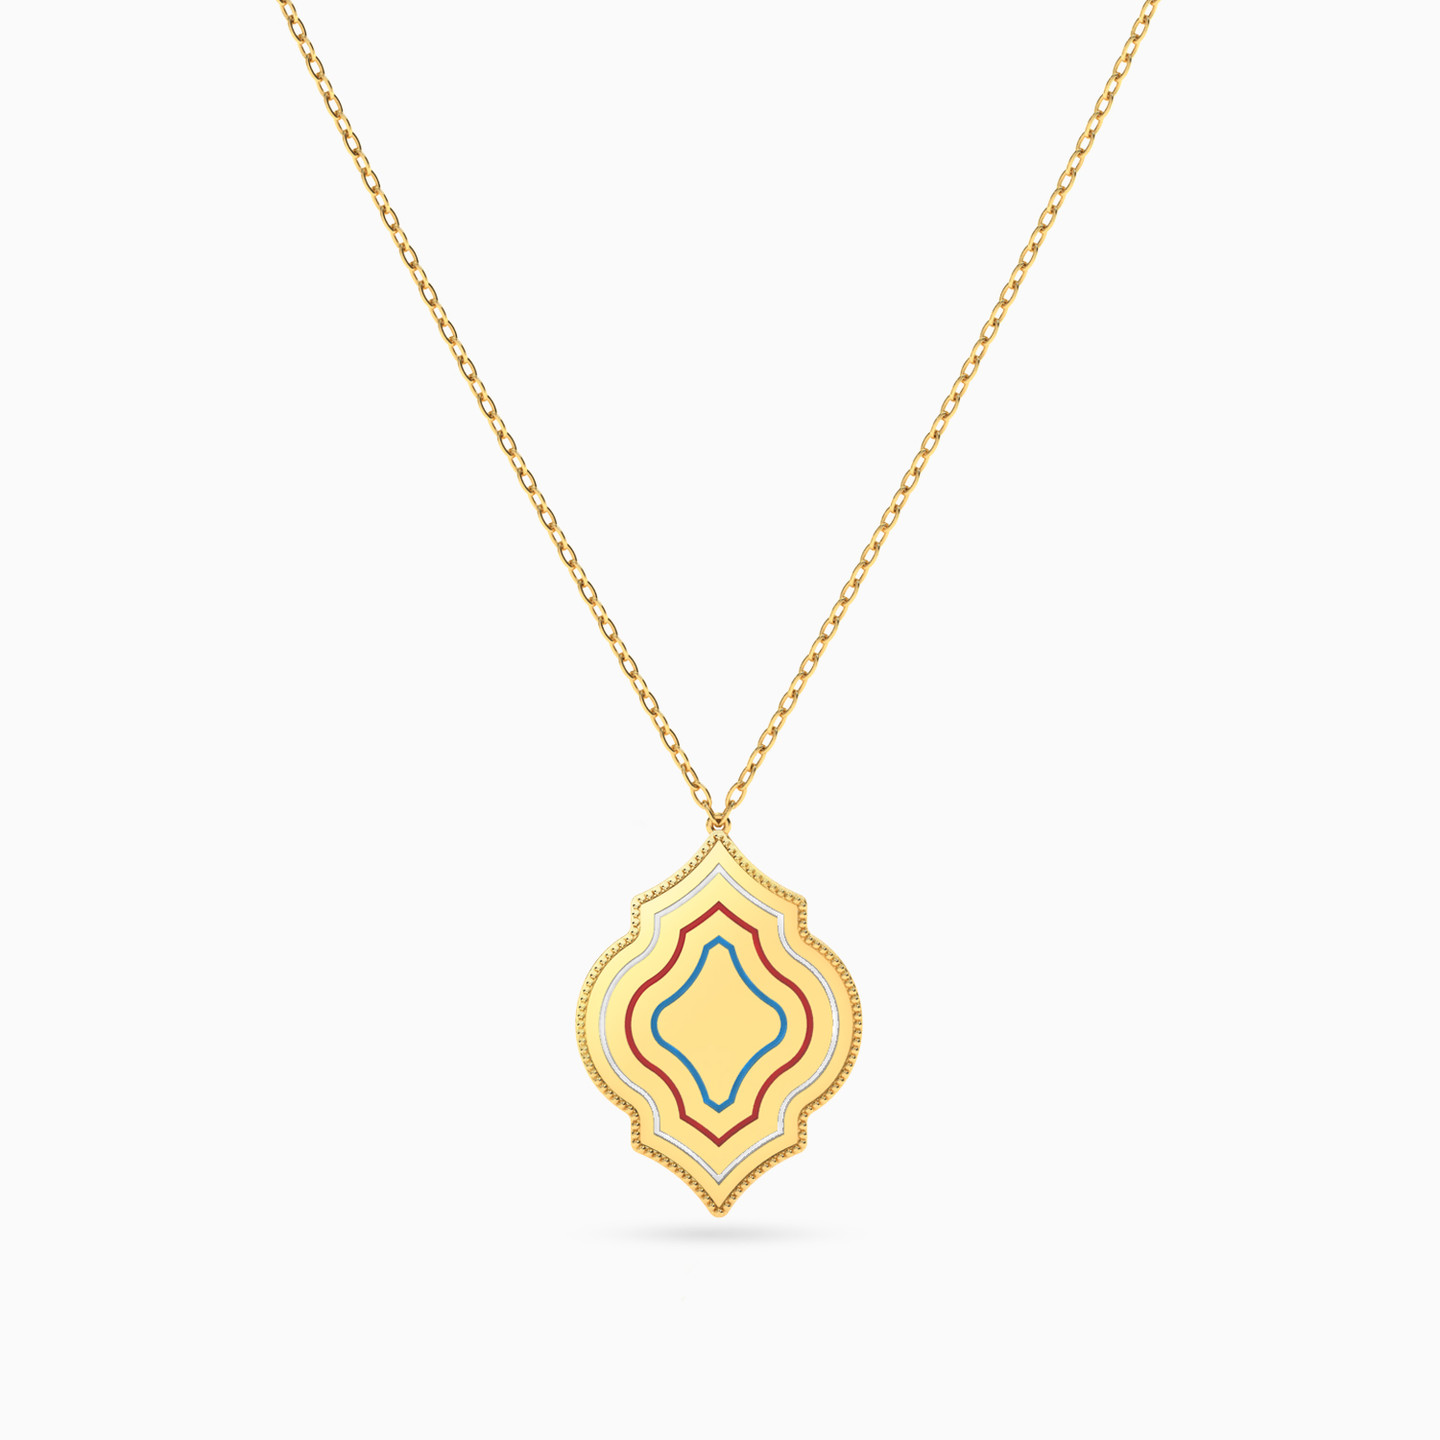 18K Gold Enamel Coated Pendant Necklace - 3